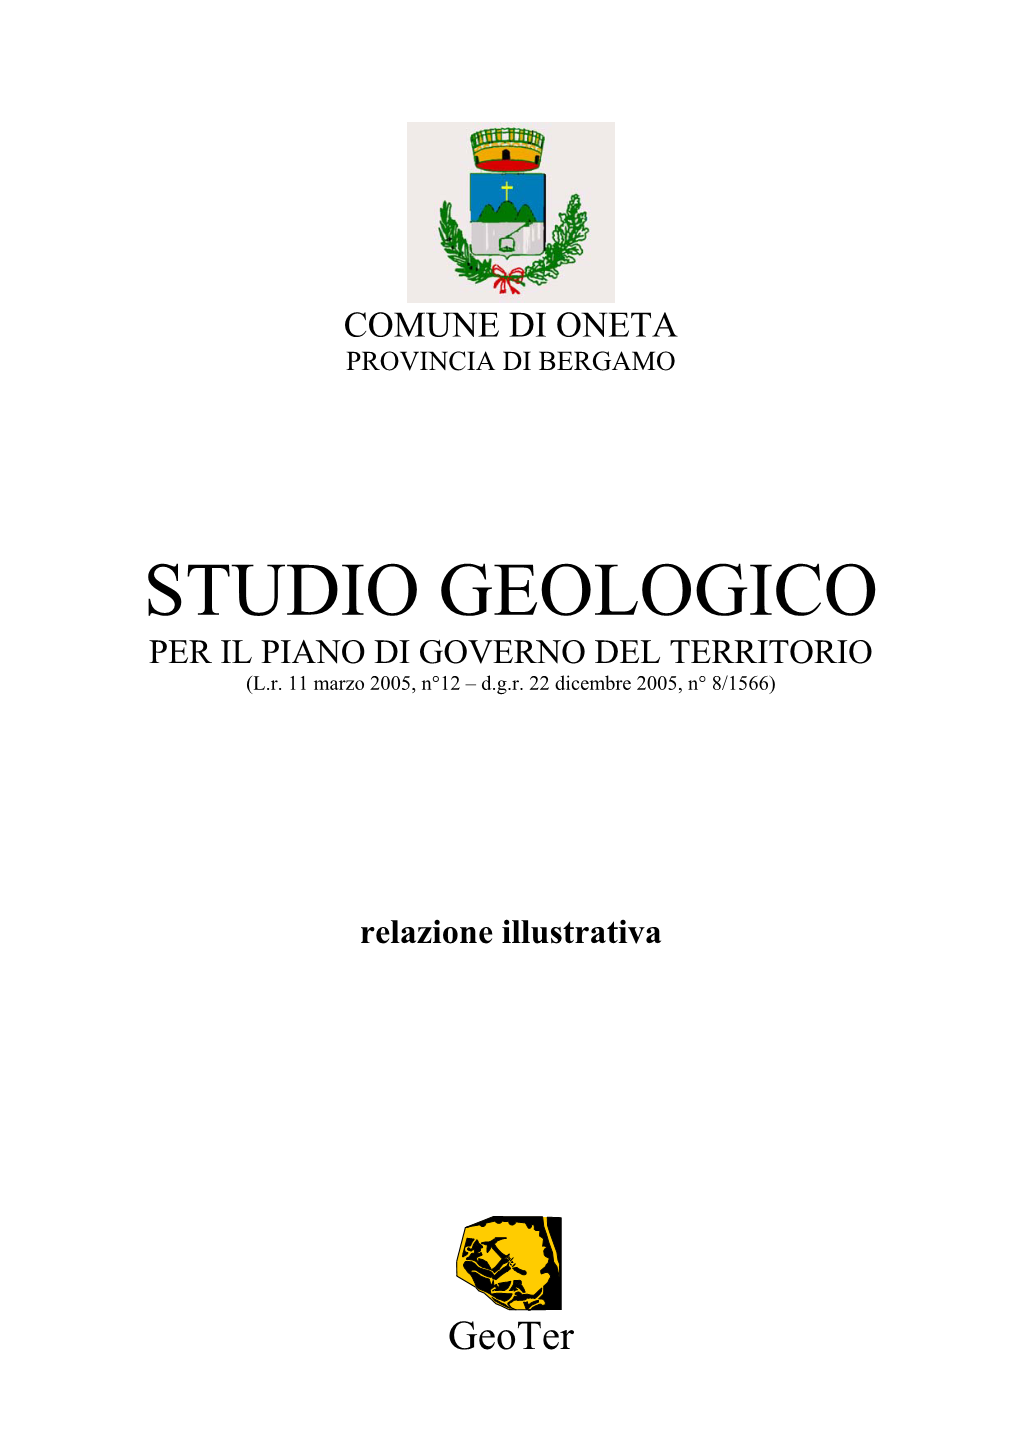 STUDIO GEOLOGICO PER IL PIANO DI GOVERNO DEL TERRITORIO (L.R